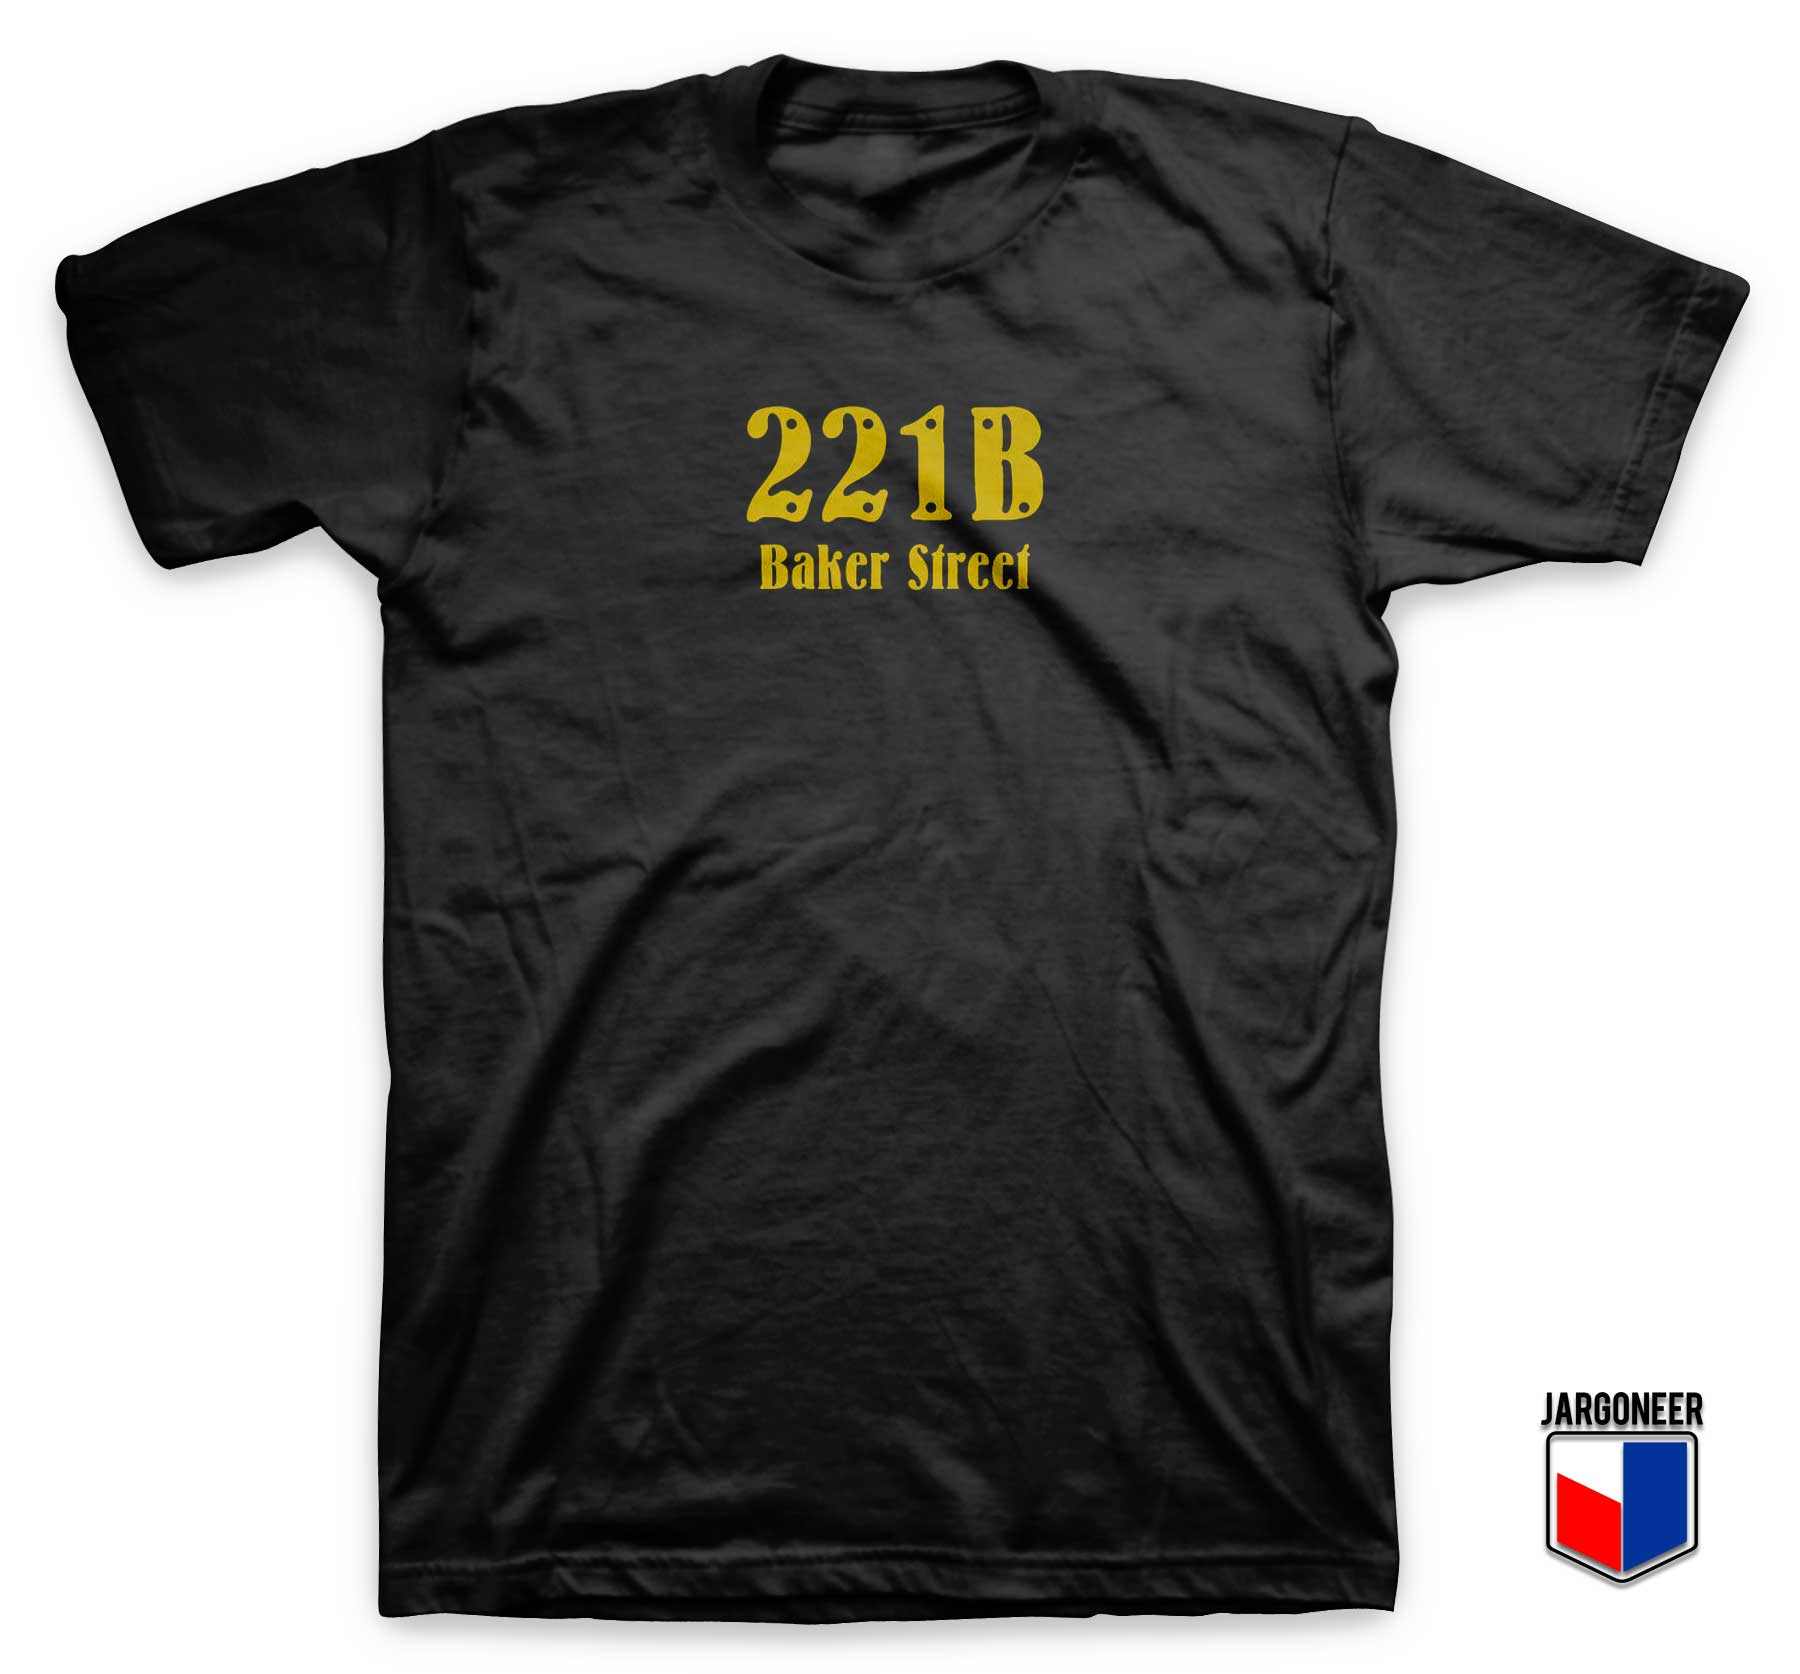 221B Baker Street T Shirt - Shop Unique Graphic Cool Shirt Designs